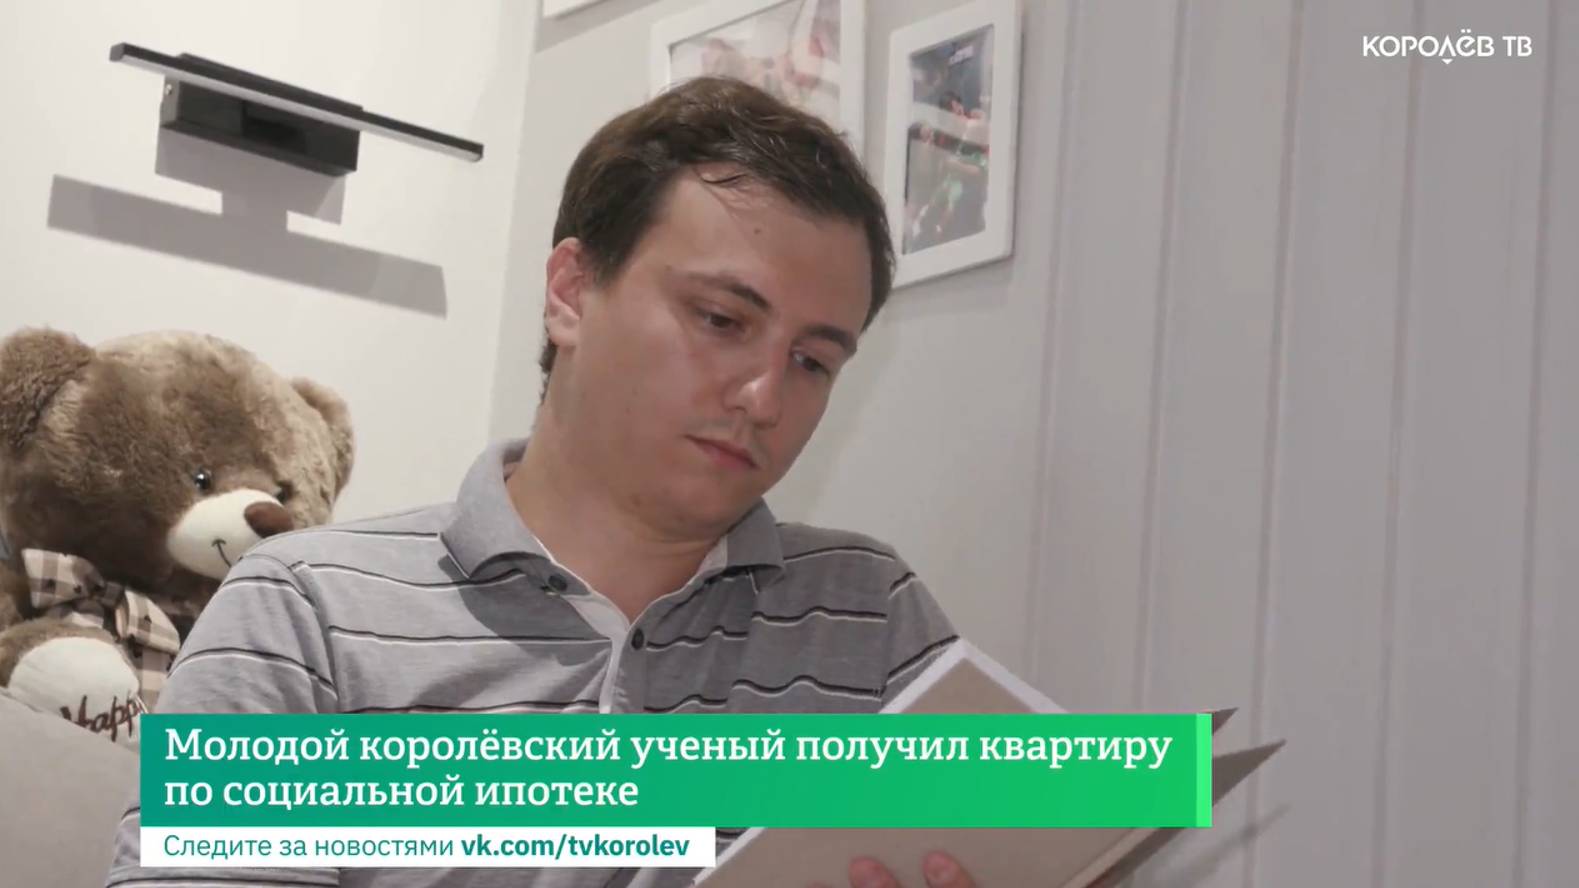 Молодой королёвский учёный получил квартиру по социальной ипотеке